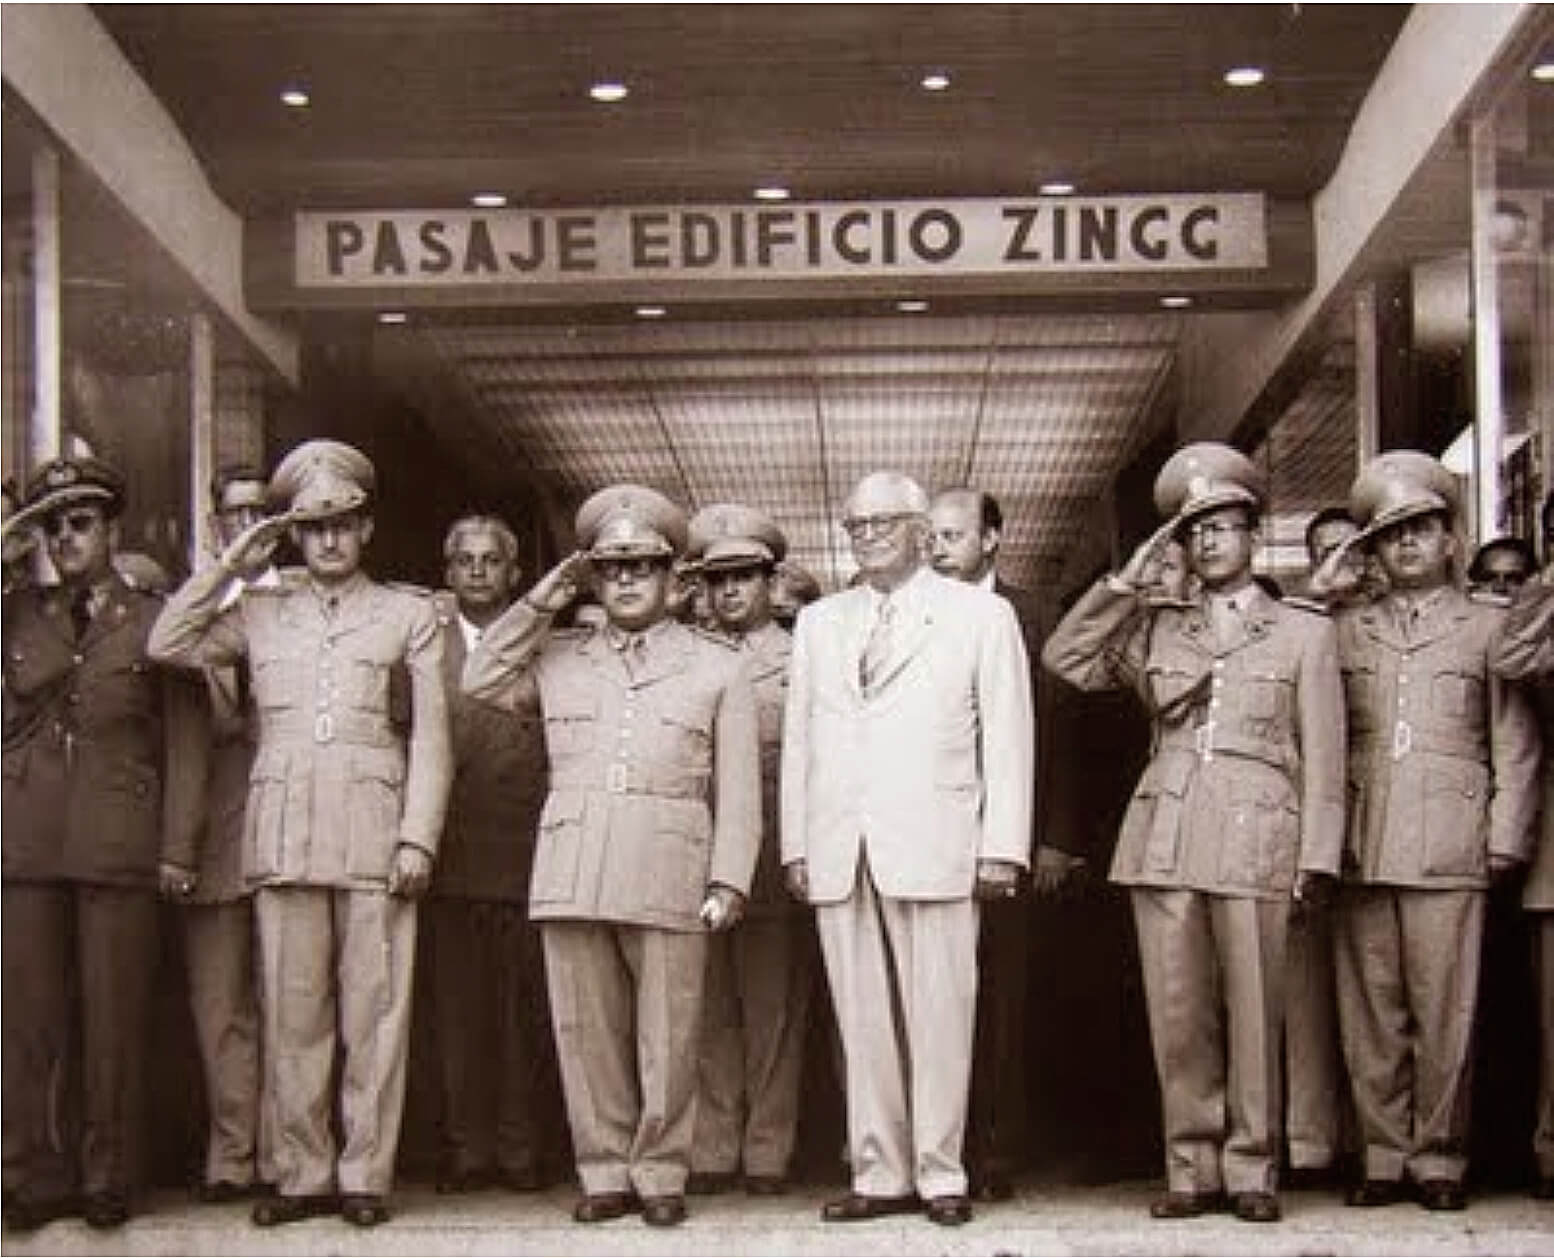 Con la asistencia del presidente de la República, Marcos Pérez Jiménez, y algunos de sus ministros, se inauguró el edificio Zingg y su moderno centro comercial